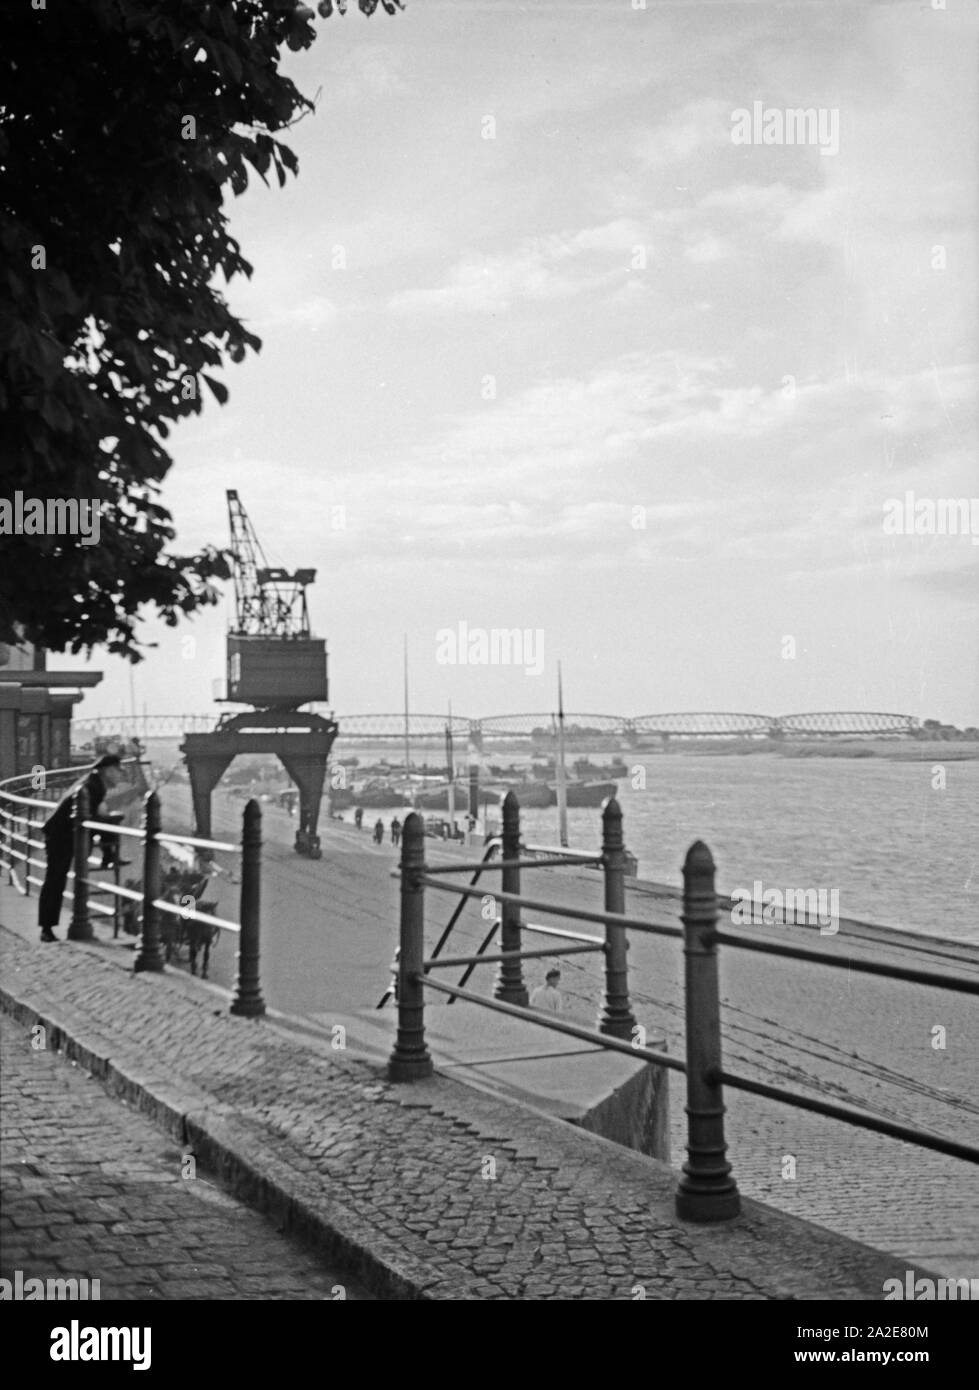 Im Hafen von Tilsit in Ostpreußen mit Blick auf den Fluß Memel und die Eisenbahnbrücke, 1930er Jahre. At the harbor of Tilsit with the river Memel and the railway bridge, East Prussia, 1930s. Stock Photo